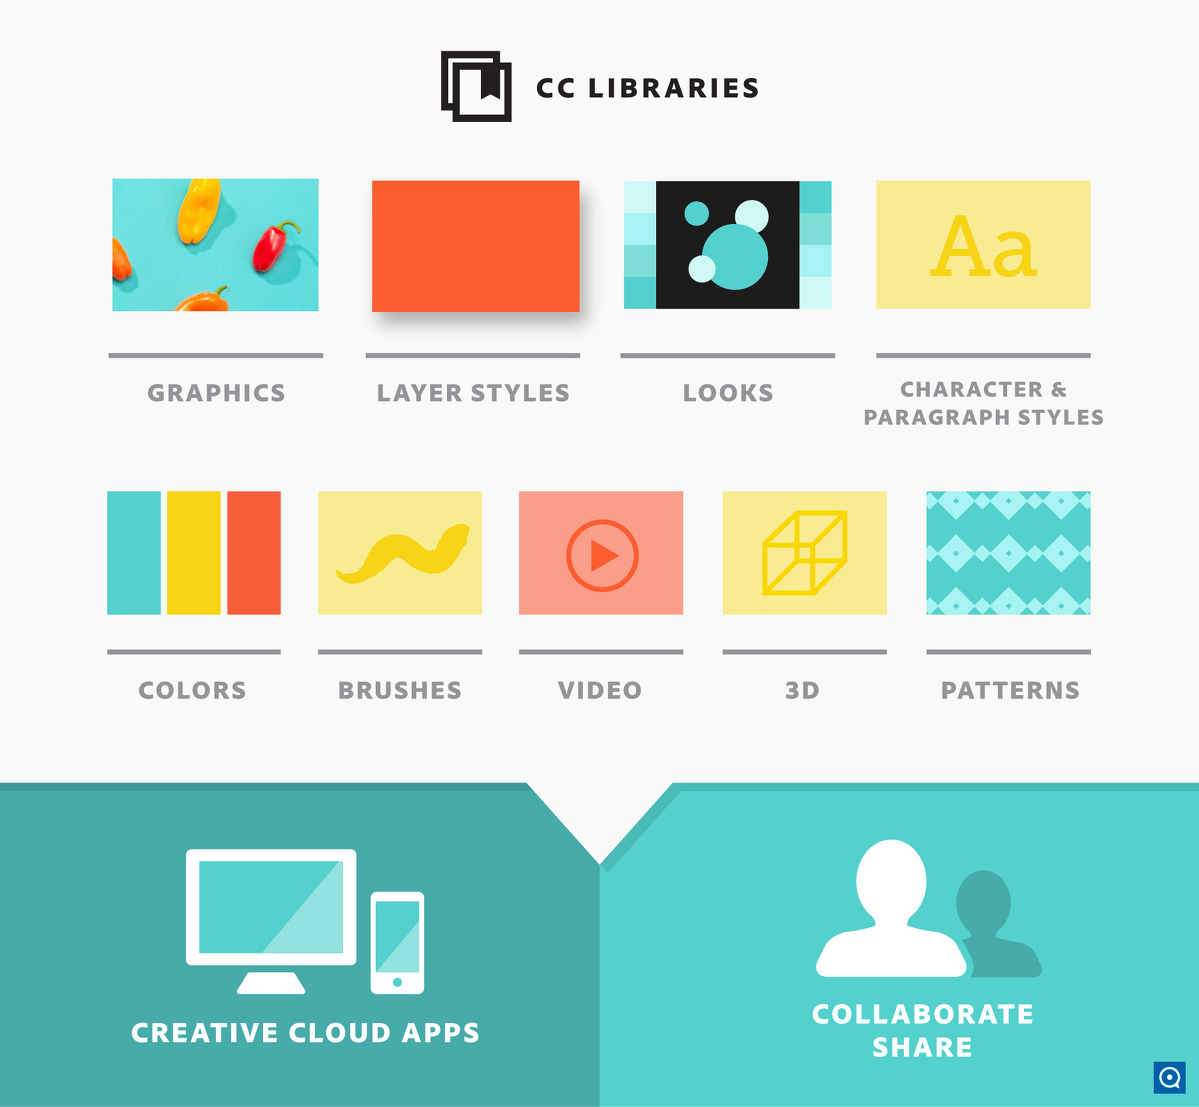 Creative Cloud Libraries 2.11 : CC Libraries